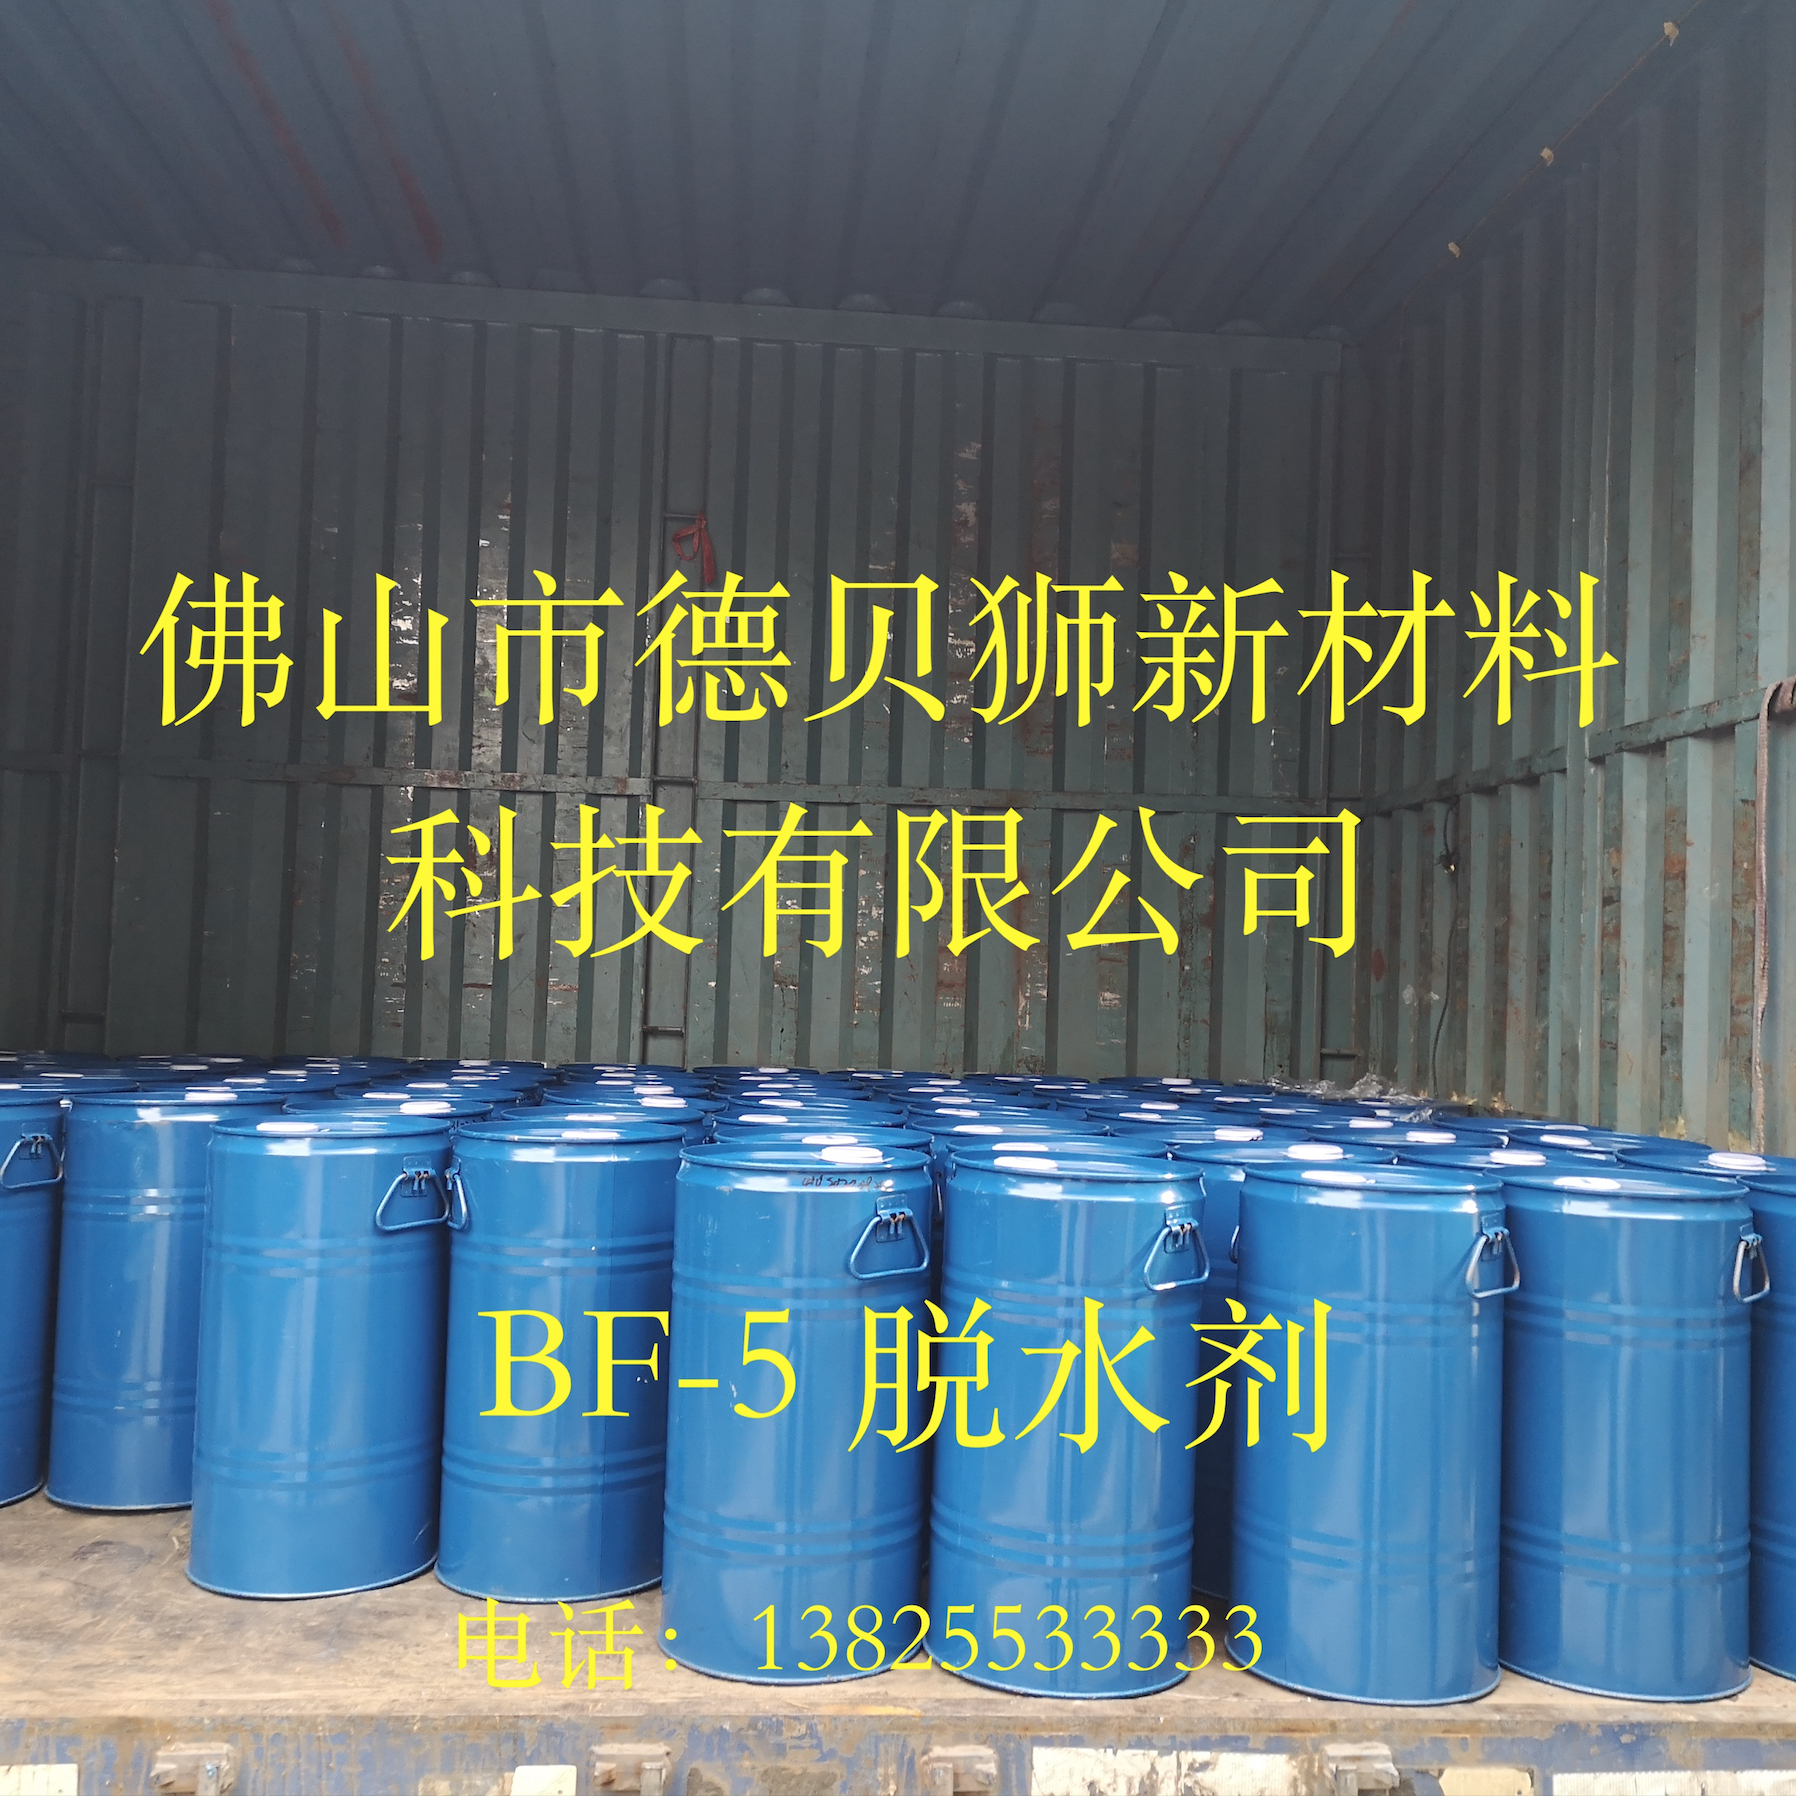 德贝狮BF-5聚氨酯脱水剂厂家固化剂吸水剂TI吸水剂PU脱水剂OF吸水剂图片